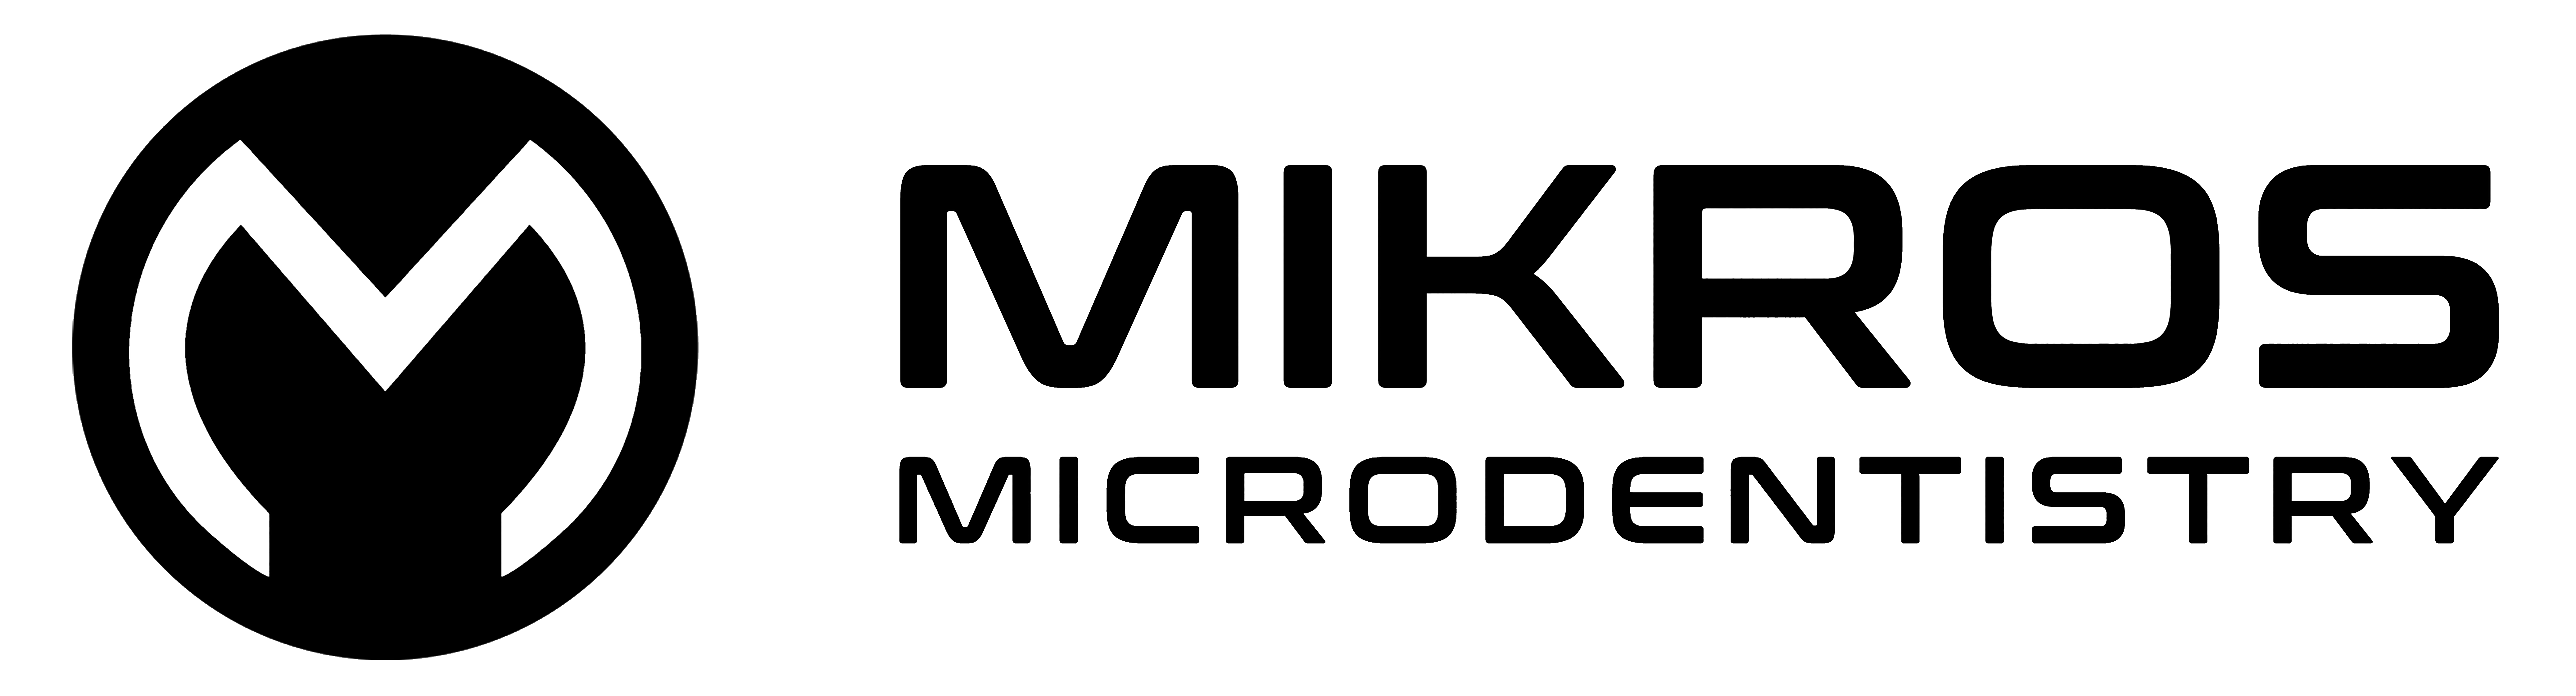 Mikros Microdentistry logo